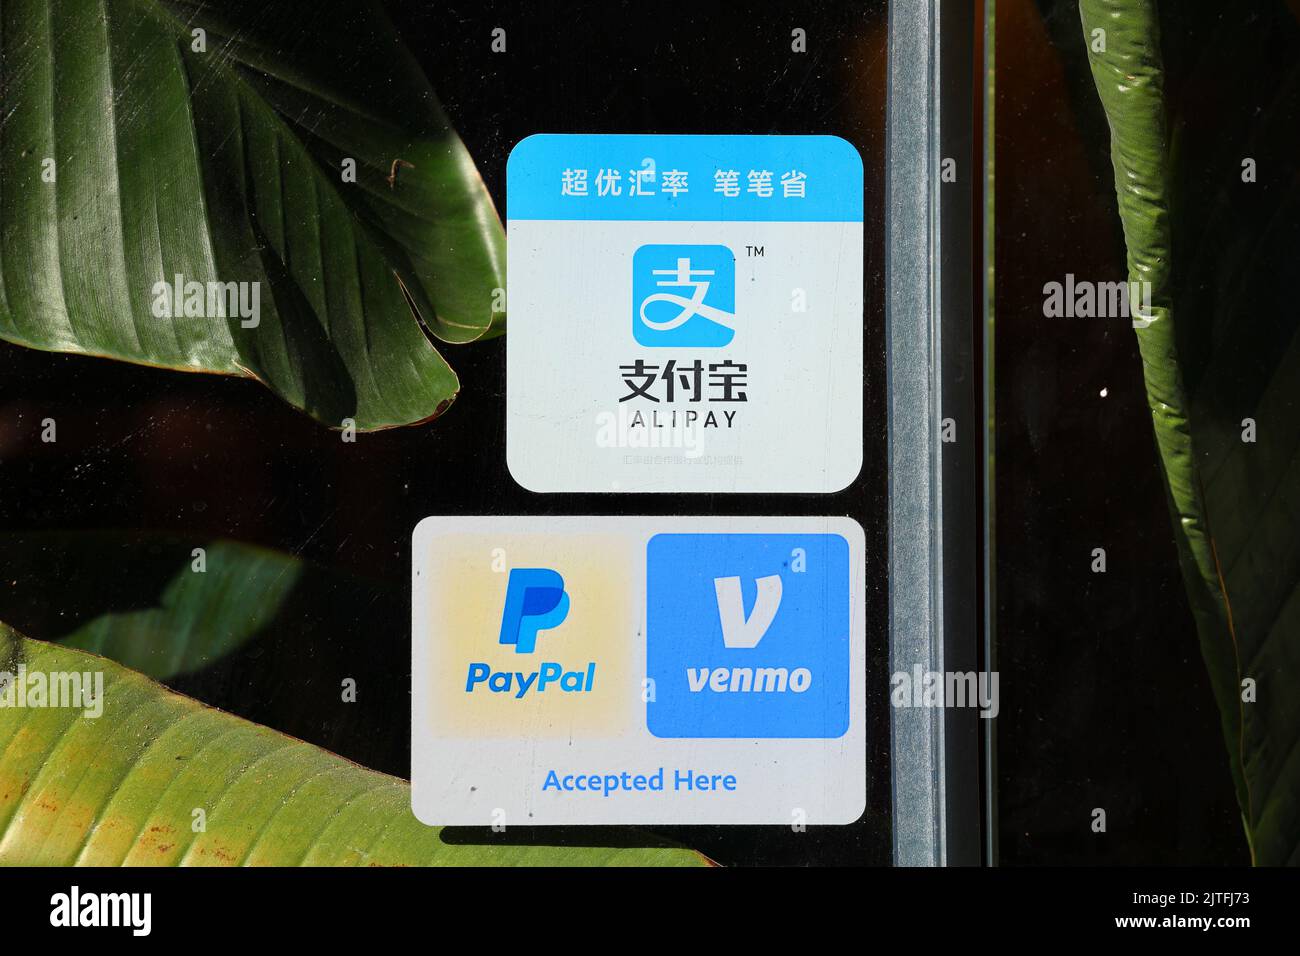 Des autocollants de paiement mobile Alipay, Venmo et PayPal sont apposés sur une porte d'un restaurant. Il s'agit d'applications de portefeuille numérique, de services financiers de transfert d'argent. Banque D'Images